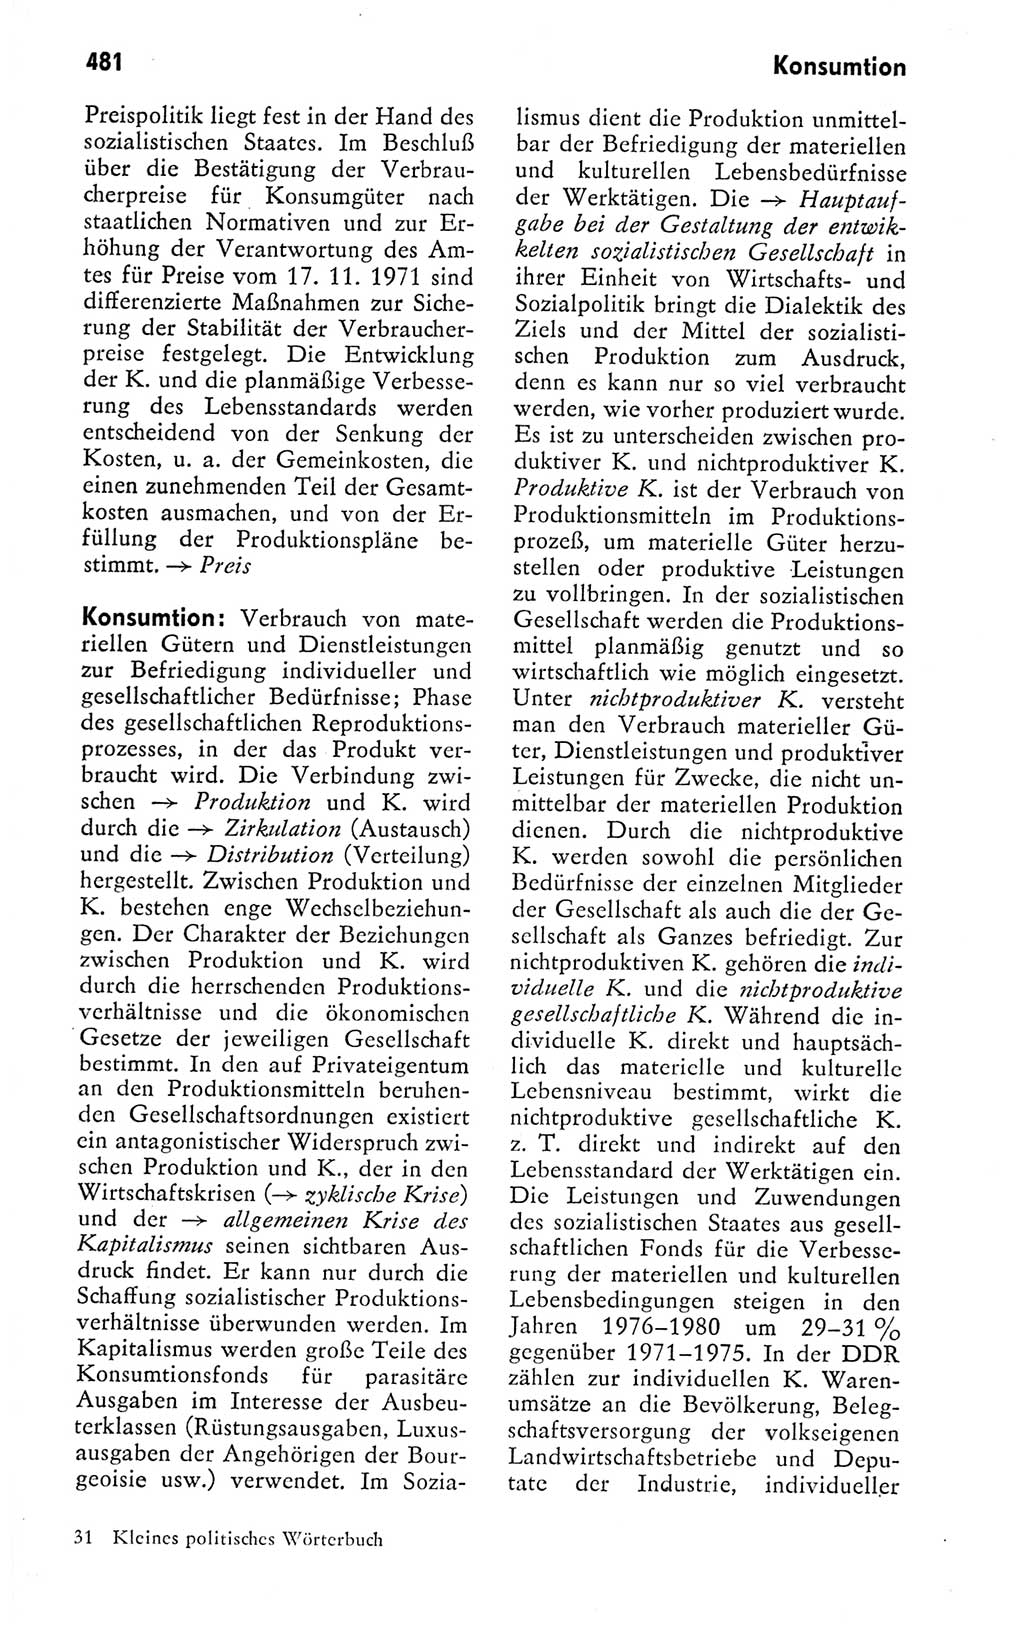 Kleines politisches Wörterbuch [Deutsche Demokratische Republik (DDR)] 1978, Seite 481 (Kl. pol. Wb. DDR 1978, S. 481)